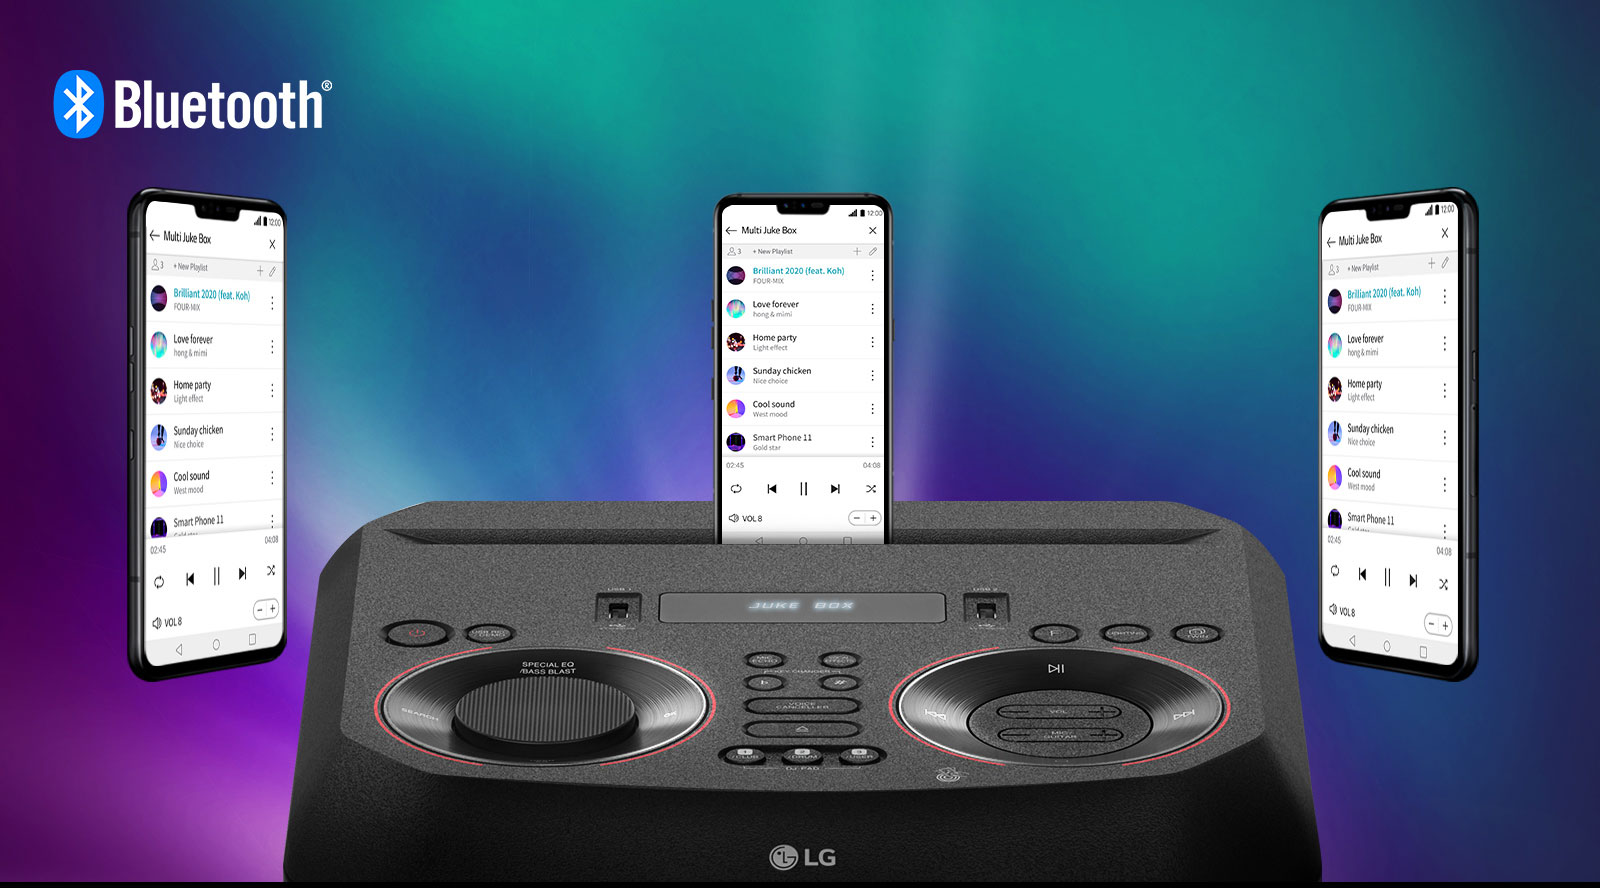 Comparte el control de la playlist desde una App